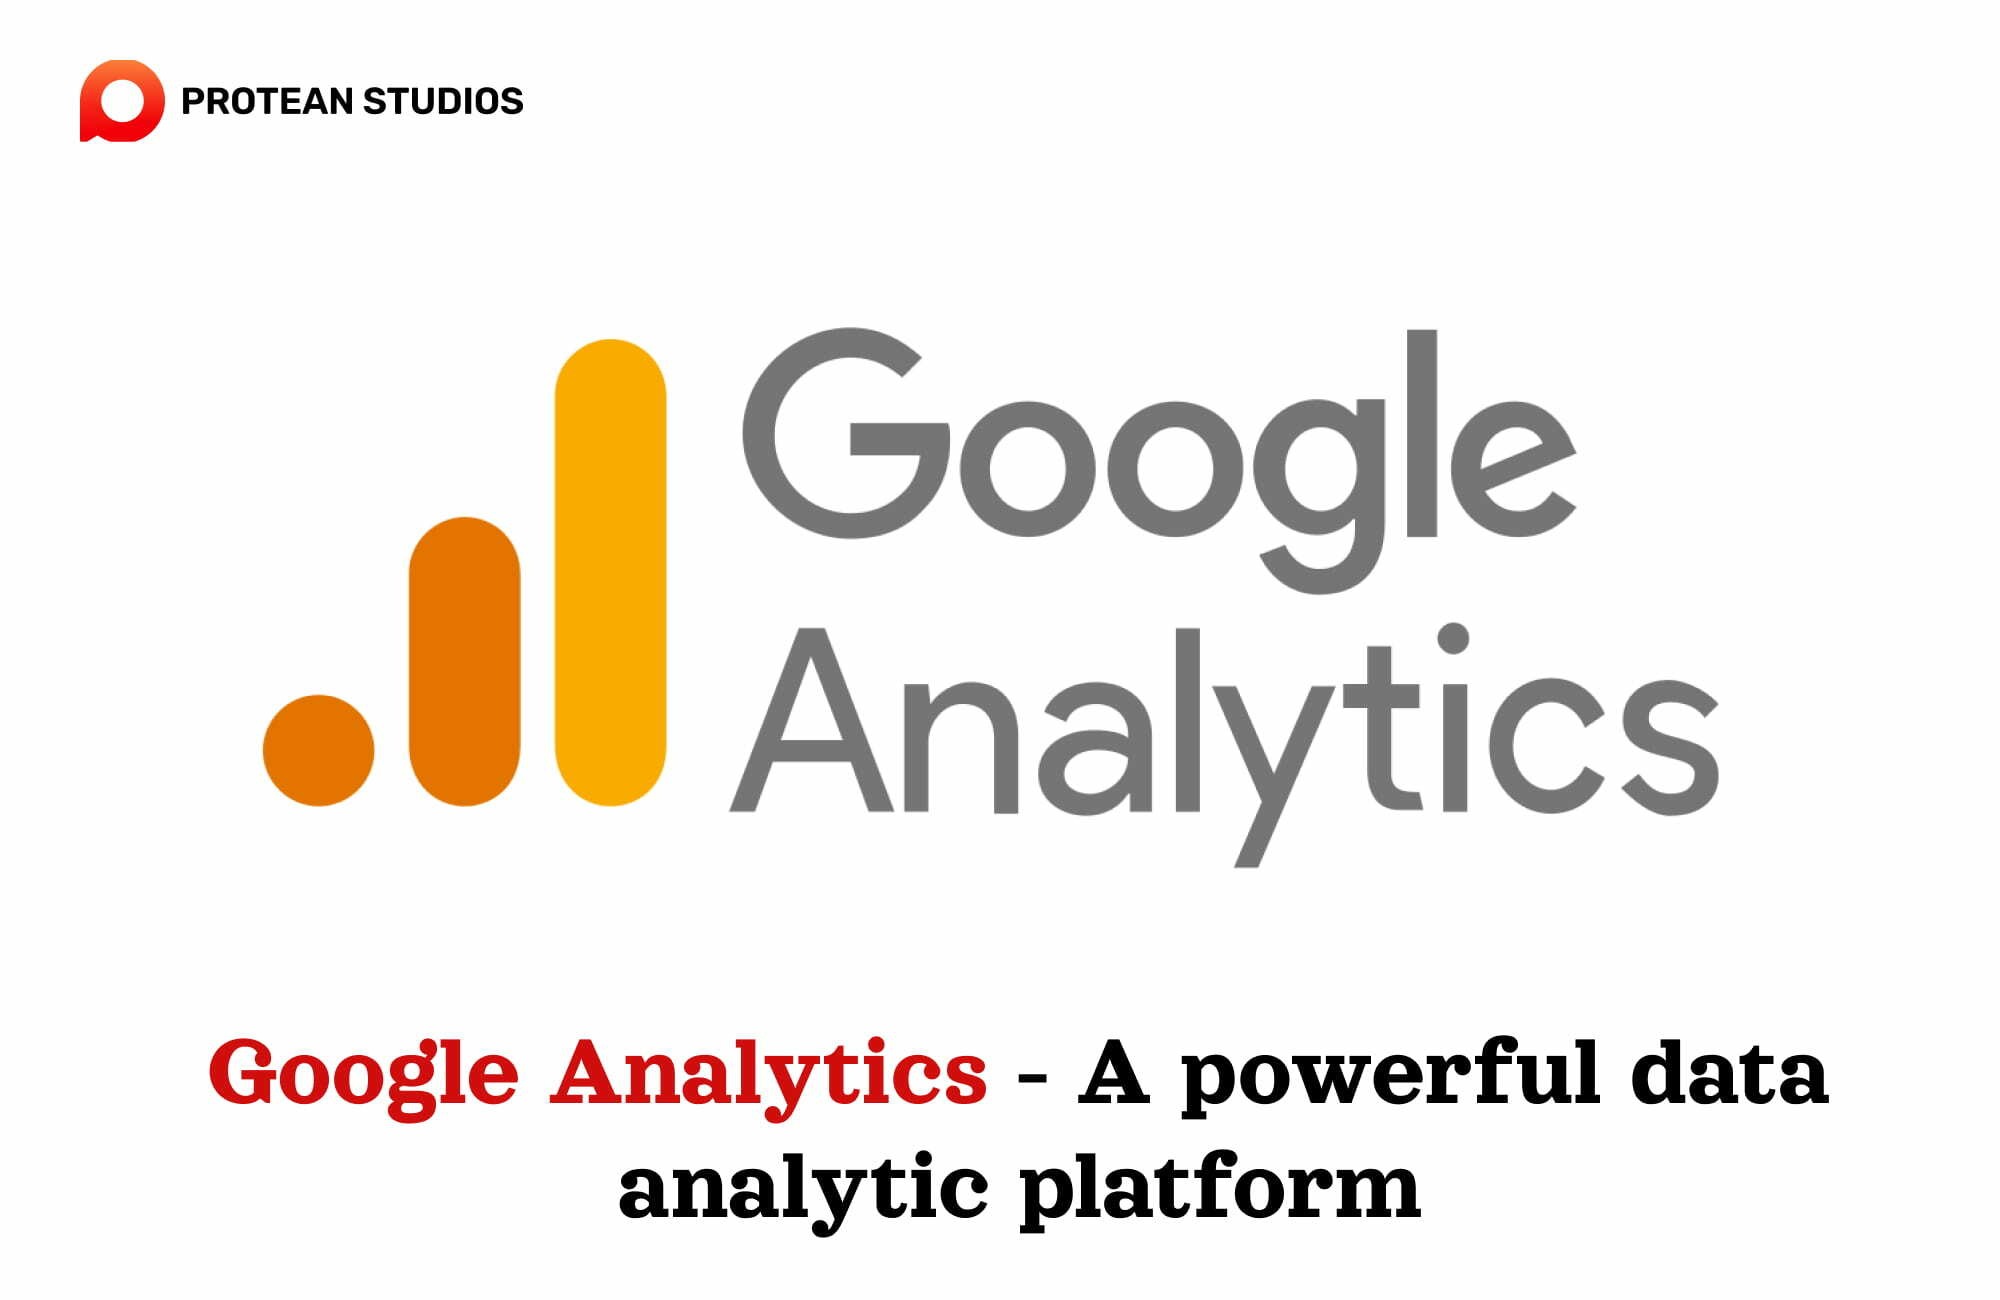 Using Google Analytics to analyze data